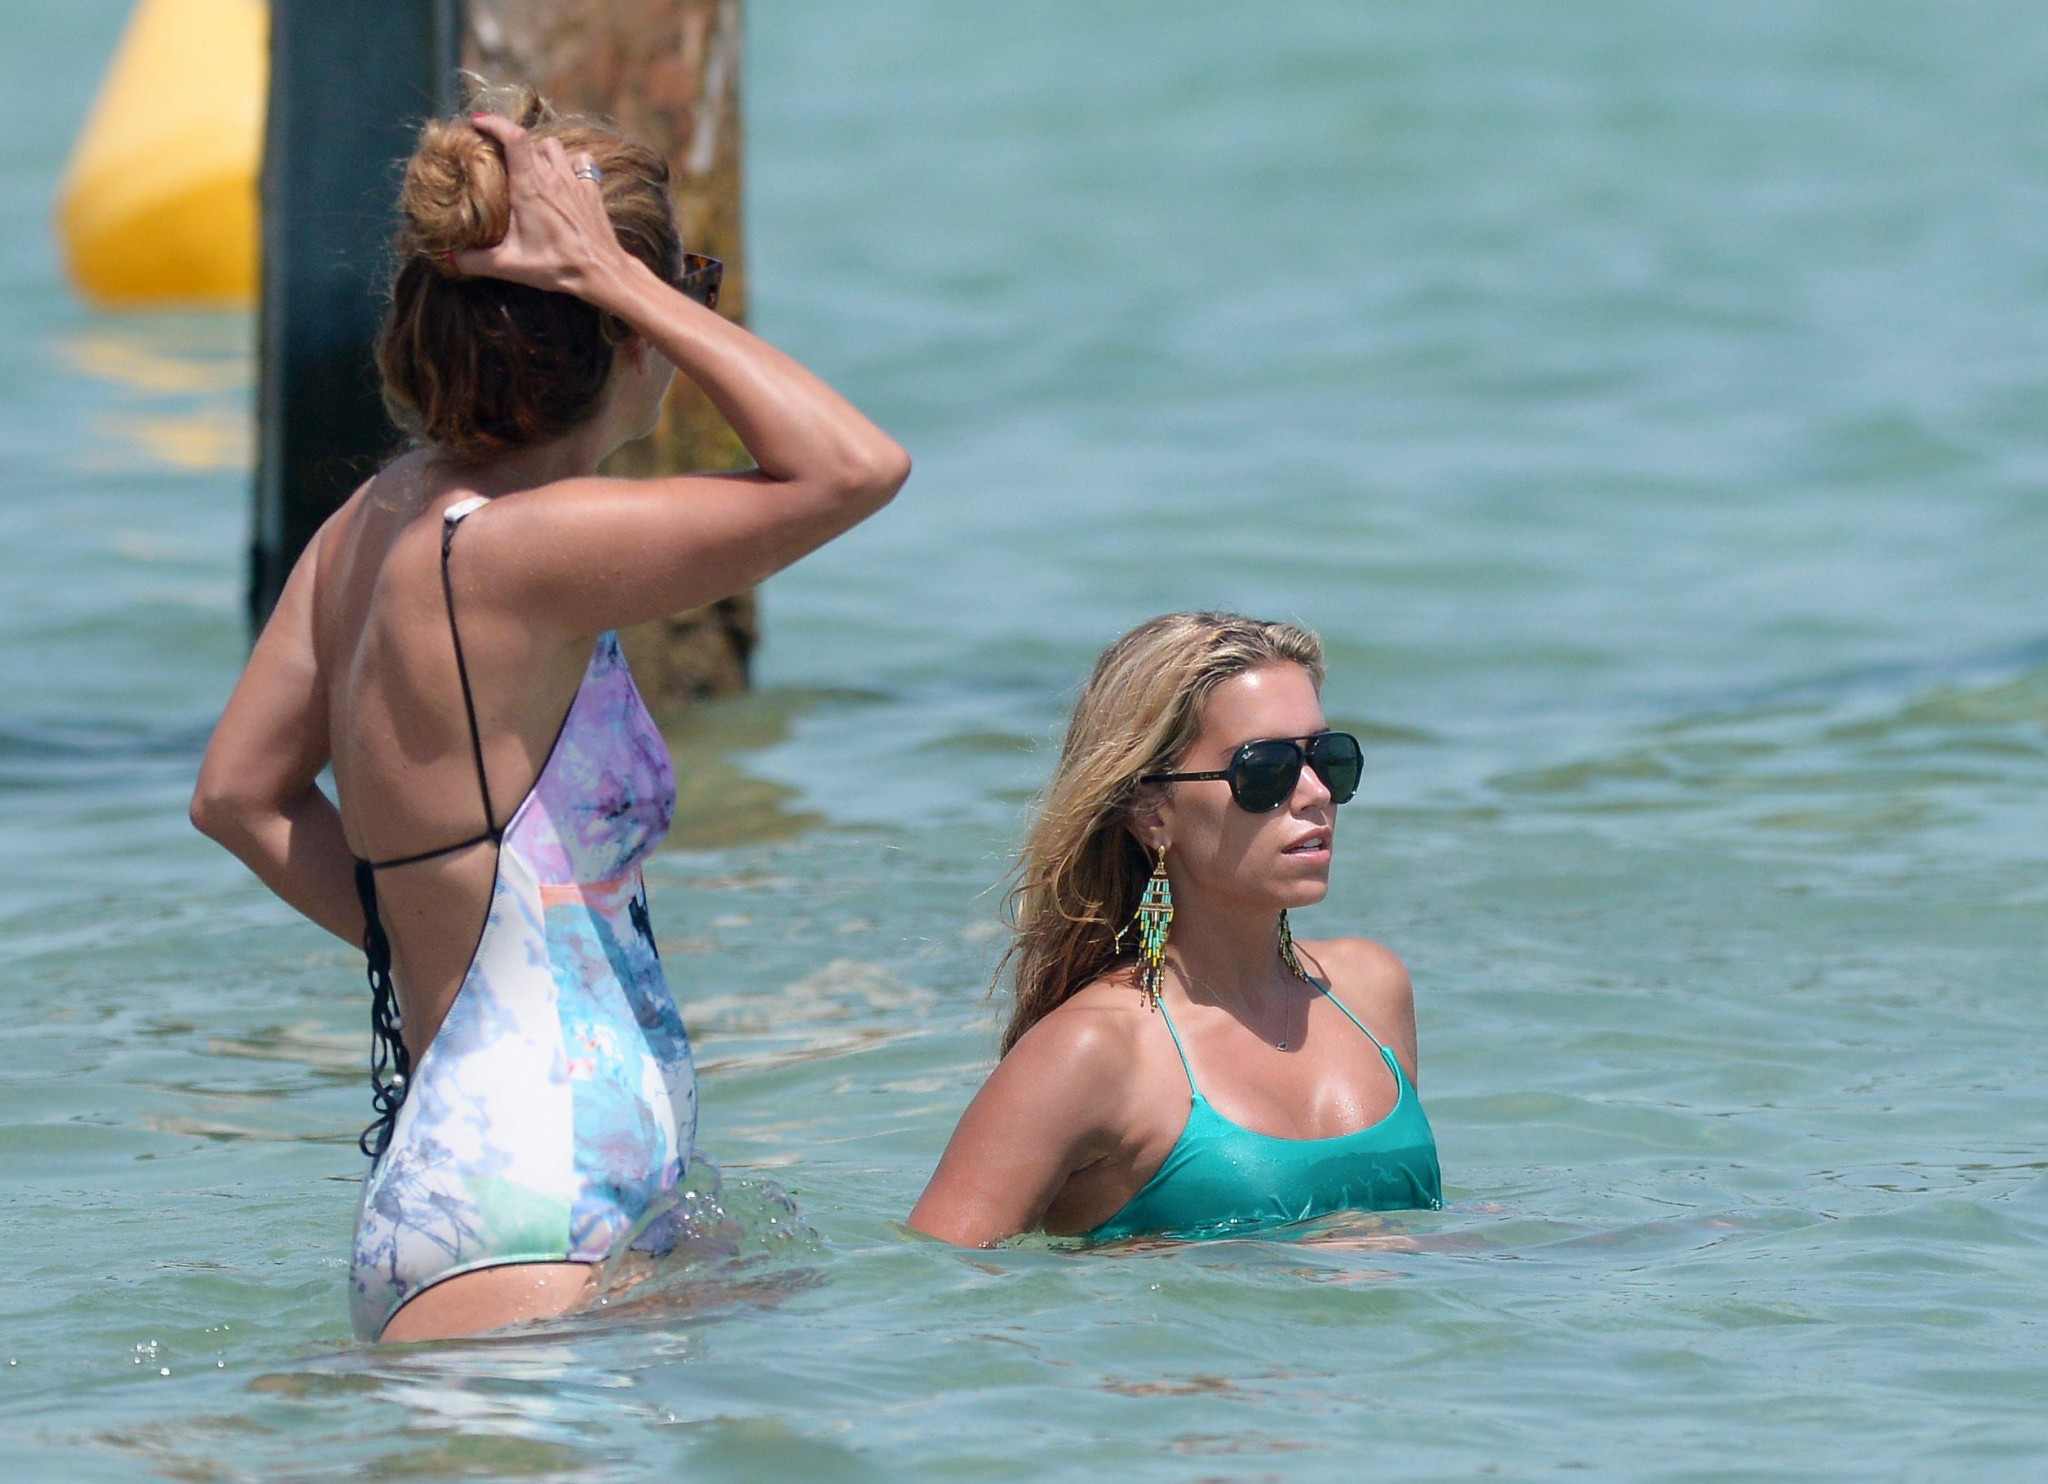 Sylvie van der vaart en bikini sur une plage de st. tropez
 #75222409